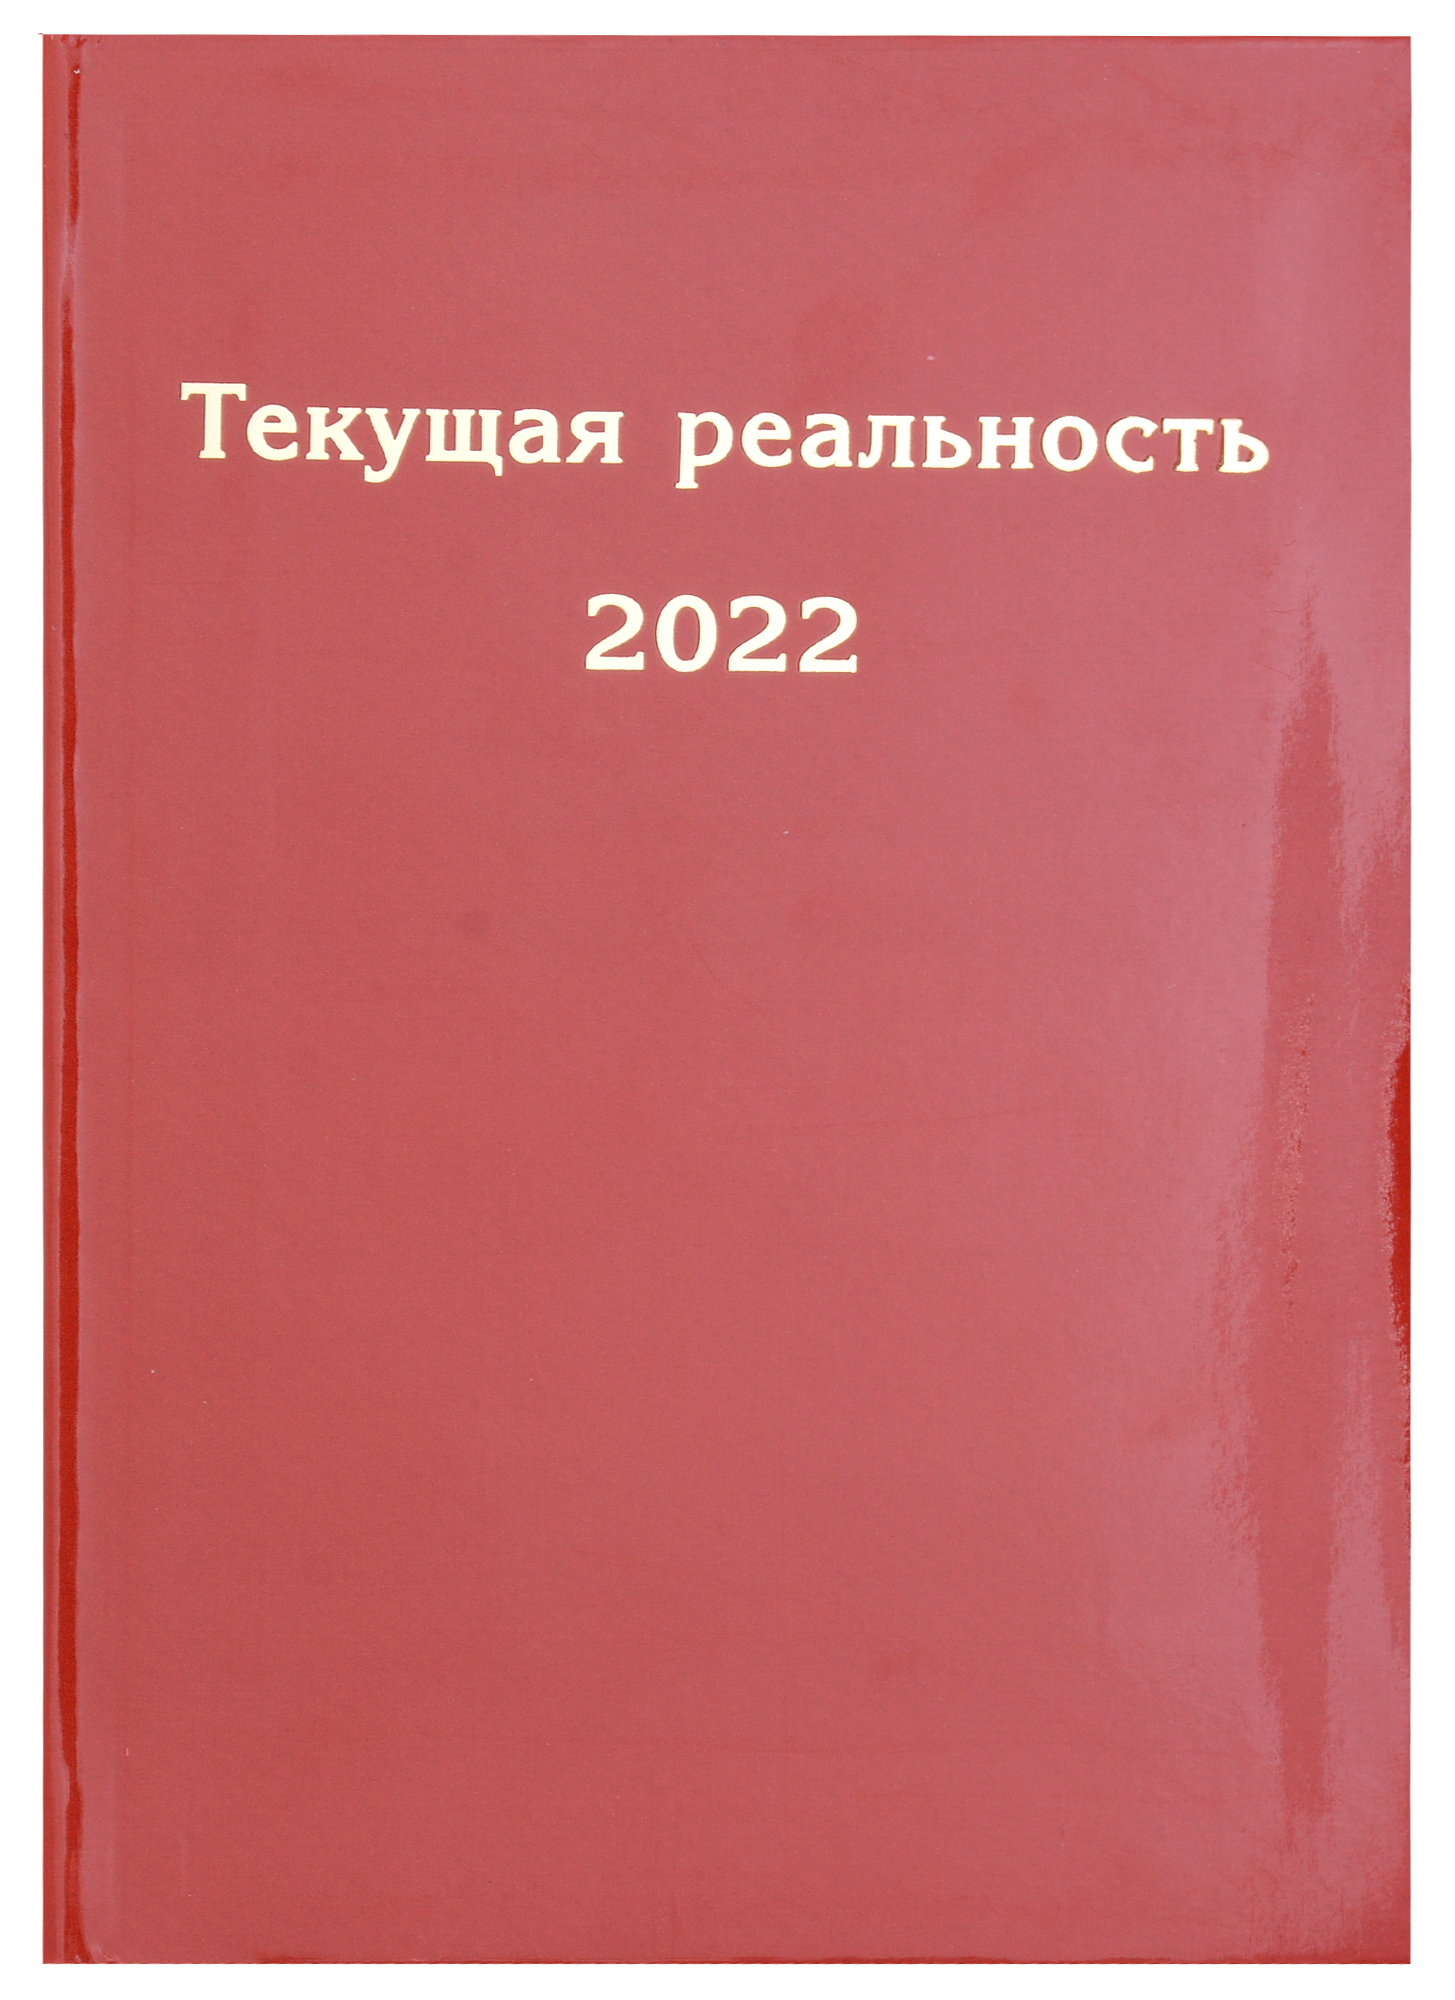 Текущая реальность 2022. Избранная хронология пономарева е ред сост текущая реальность 2021 избранная хронология